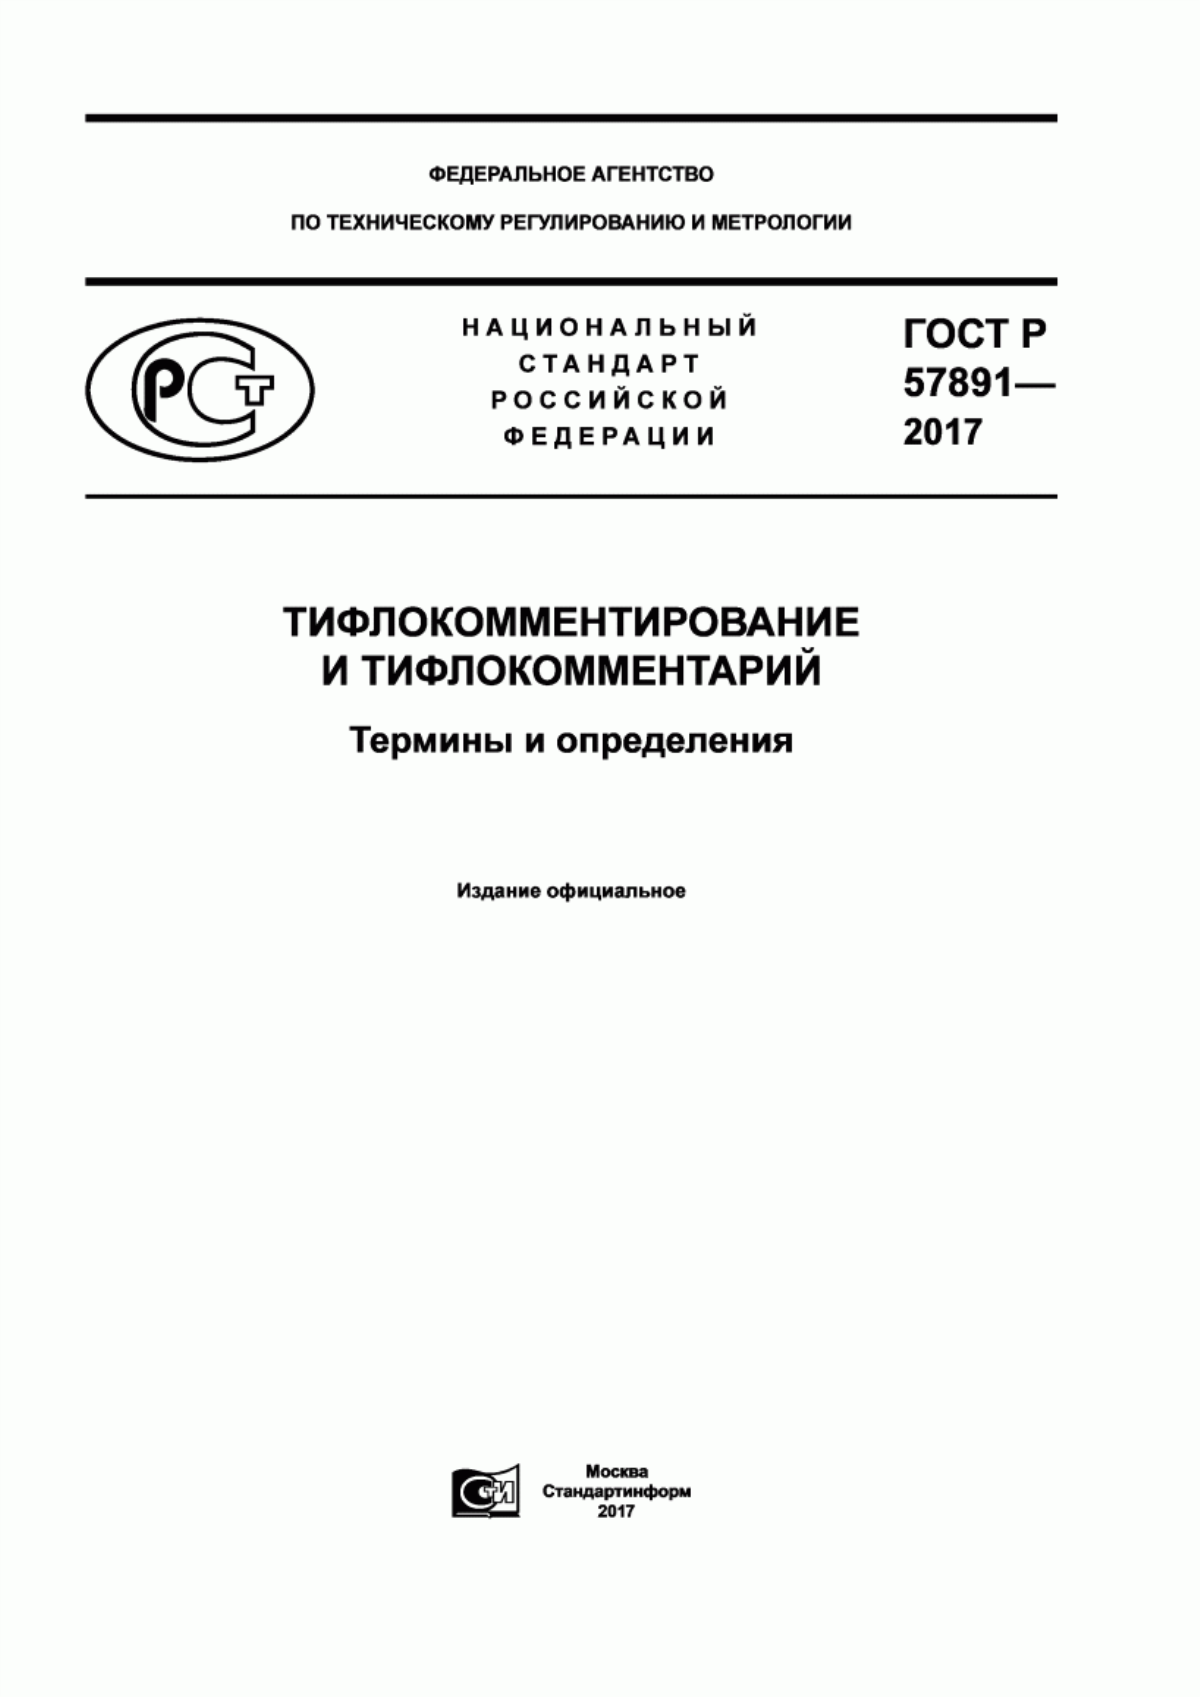 ГОСТ Р 57891-2017 Тифлокомментирование и тифлокомментарий. Термины и определения